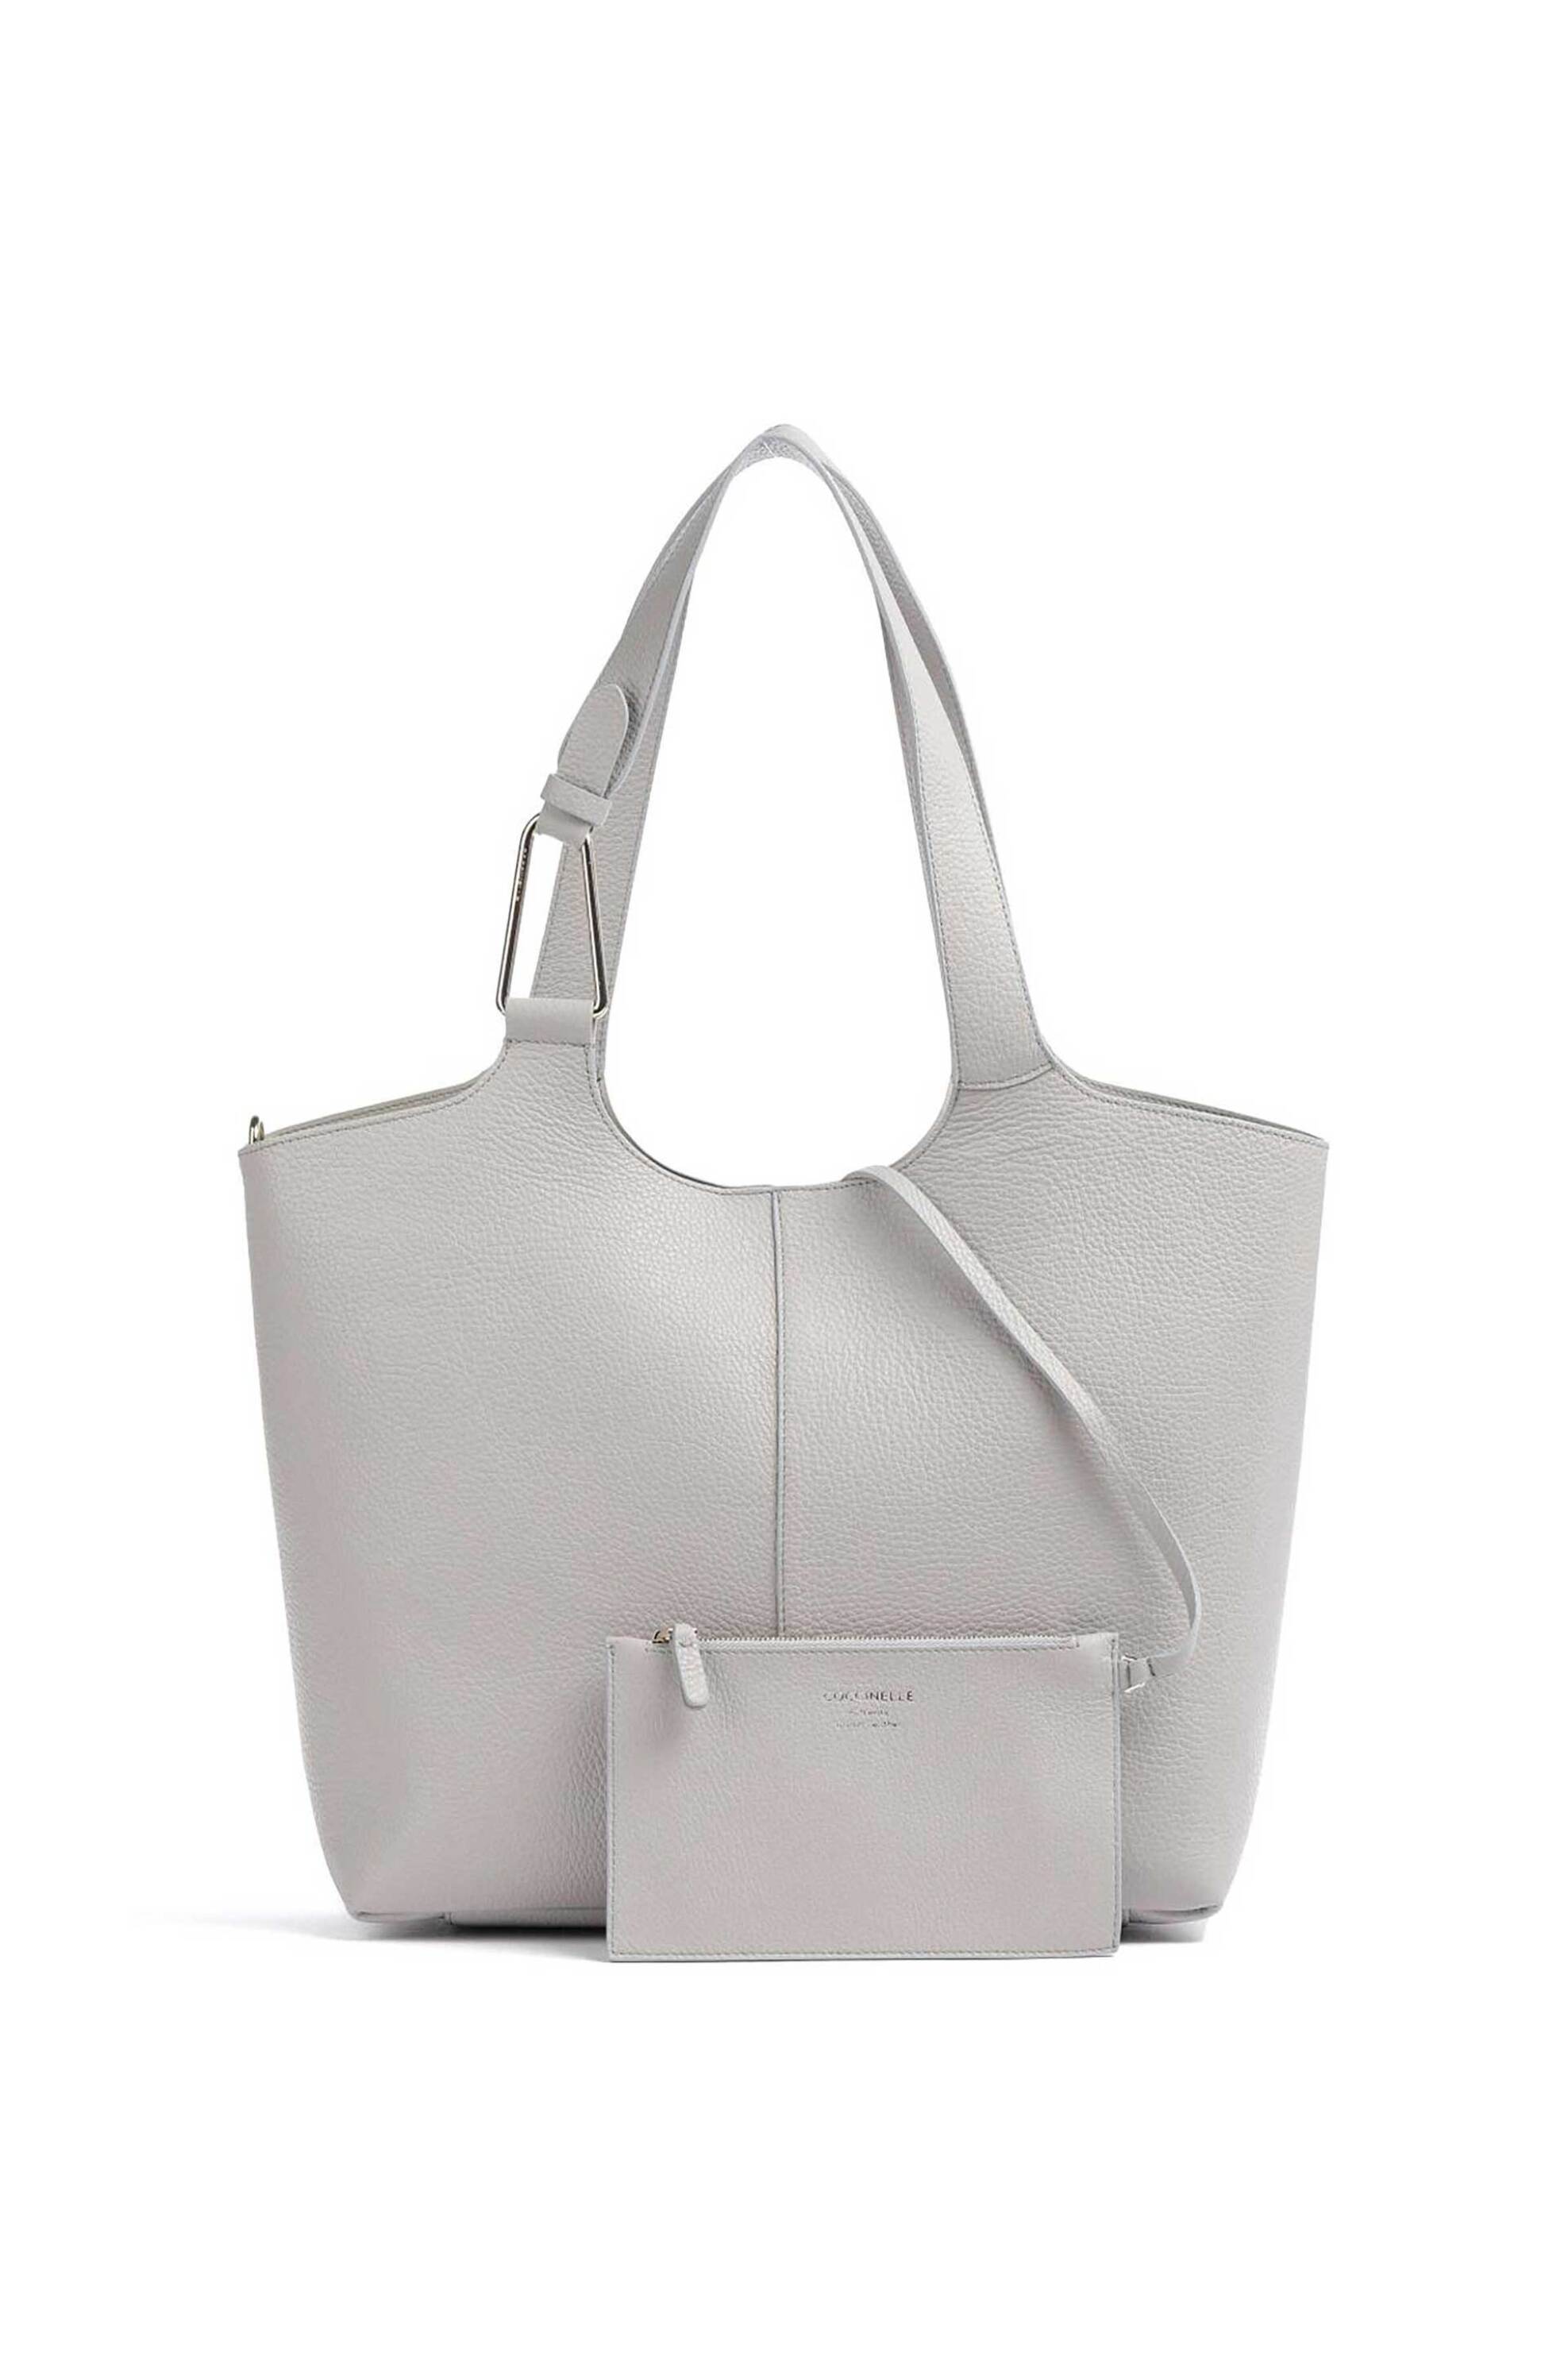 Γυναίκα > ΤΣΑΝΤΕΣ > Τσάντες Ώμου & Shopper Bags Coccinelle γυναικεία τσάντα shopper μονόχρωμη με μαγνητικό κουμπί "Brume" - E1QHA-110101 Γκρι